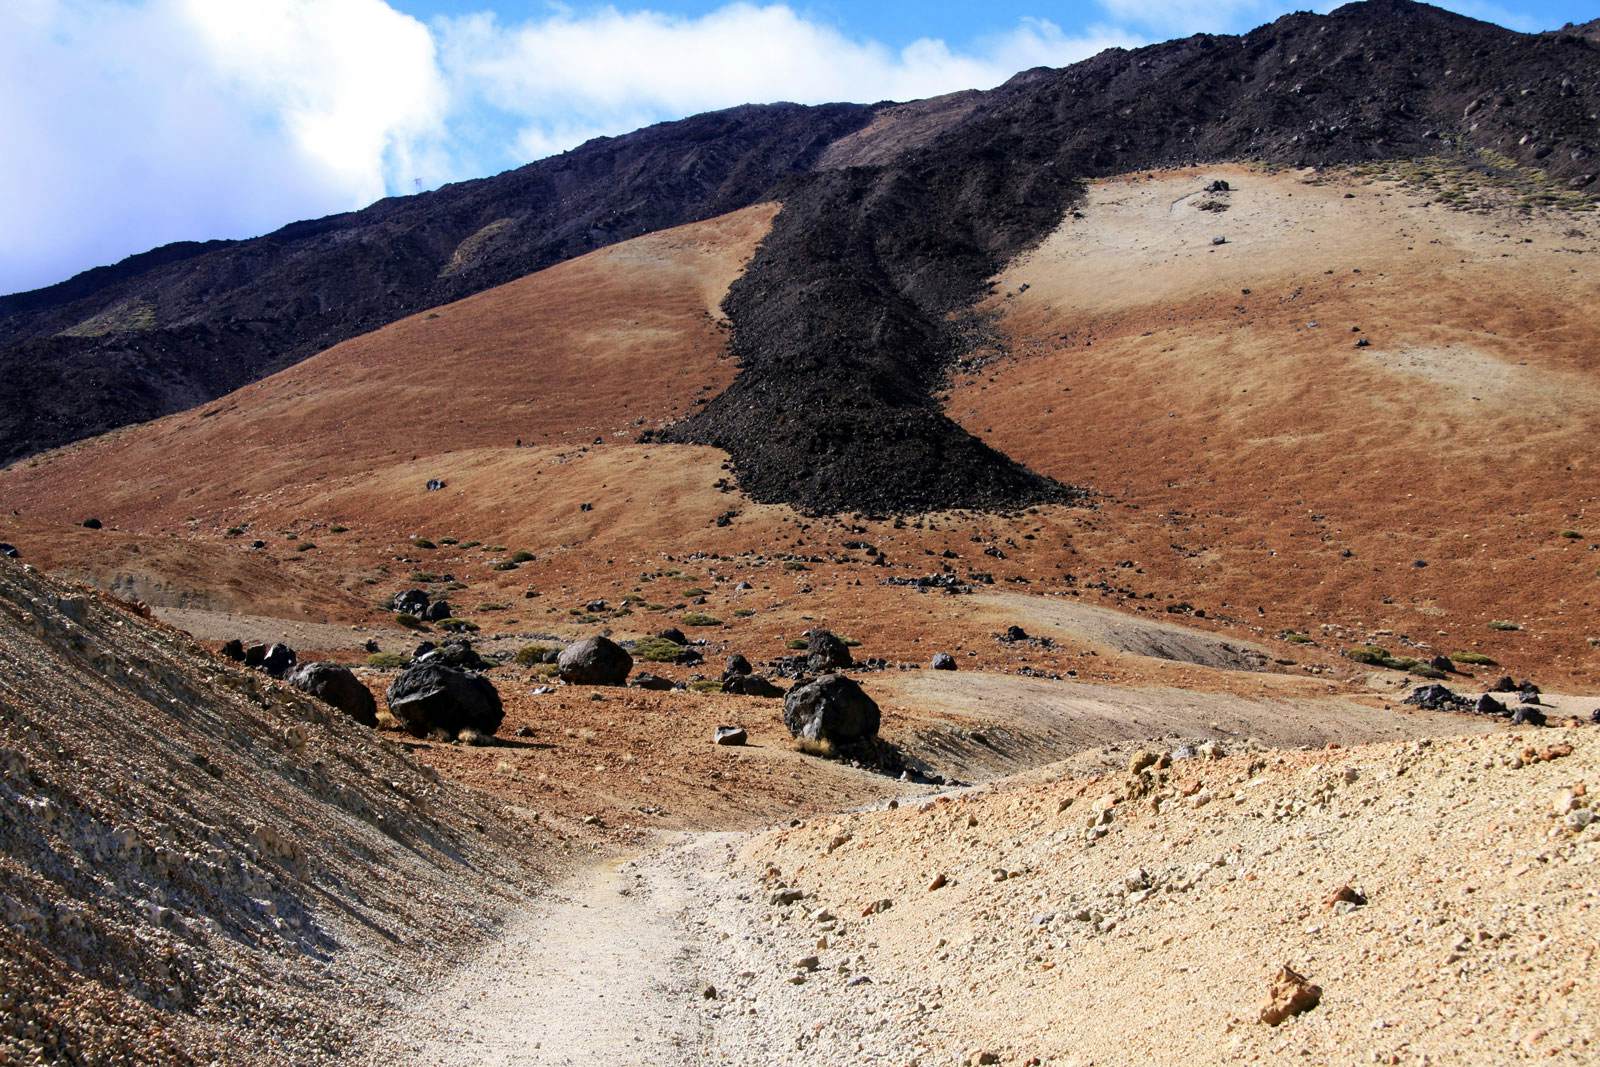 La colada de lava y la ruta de senderismo en Montaña Blanca. Pequeños huevos del Teide en el paisaje.